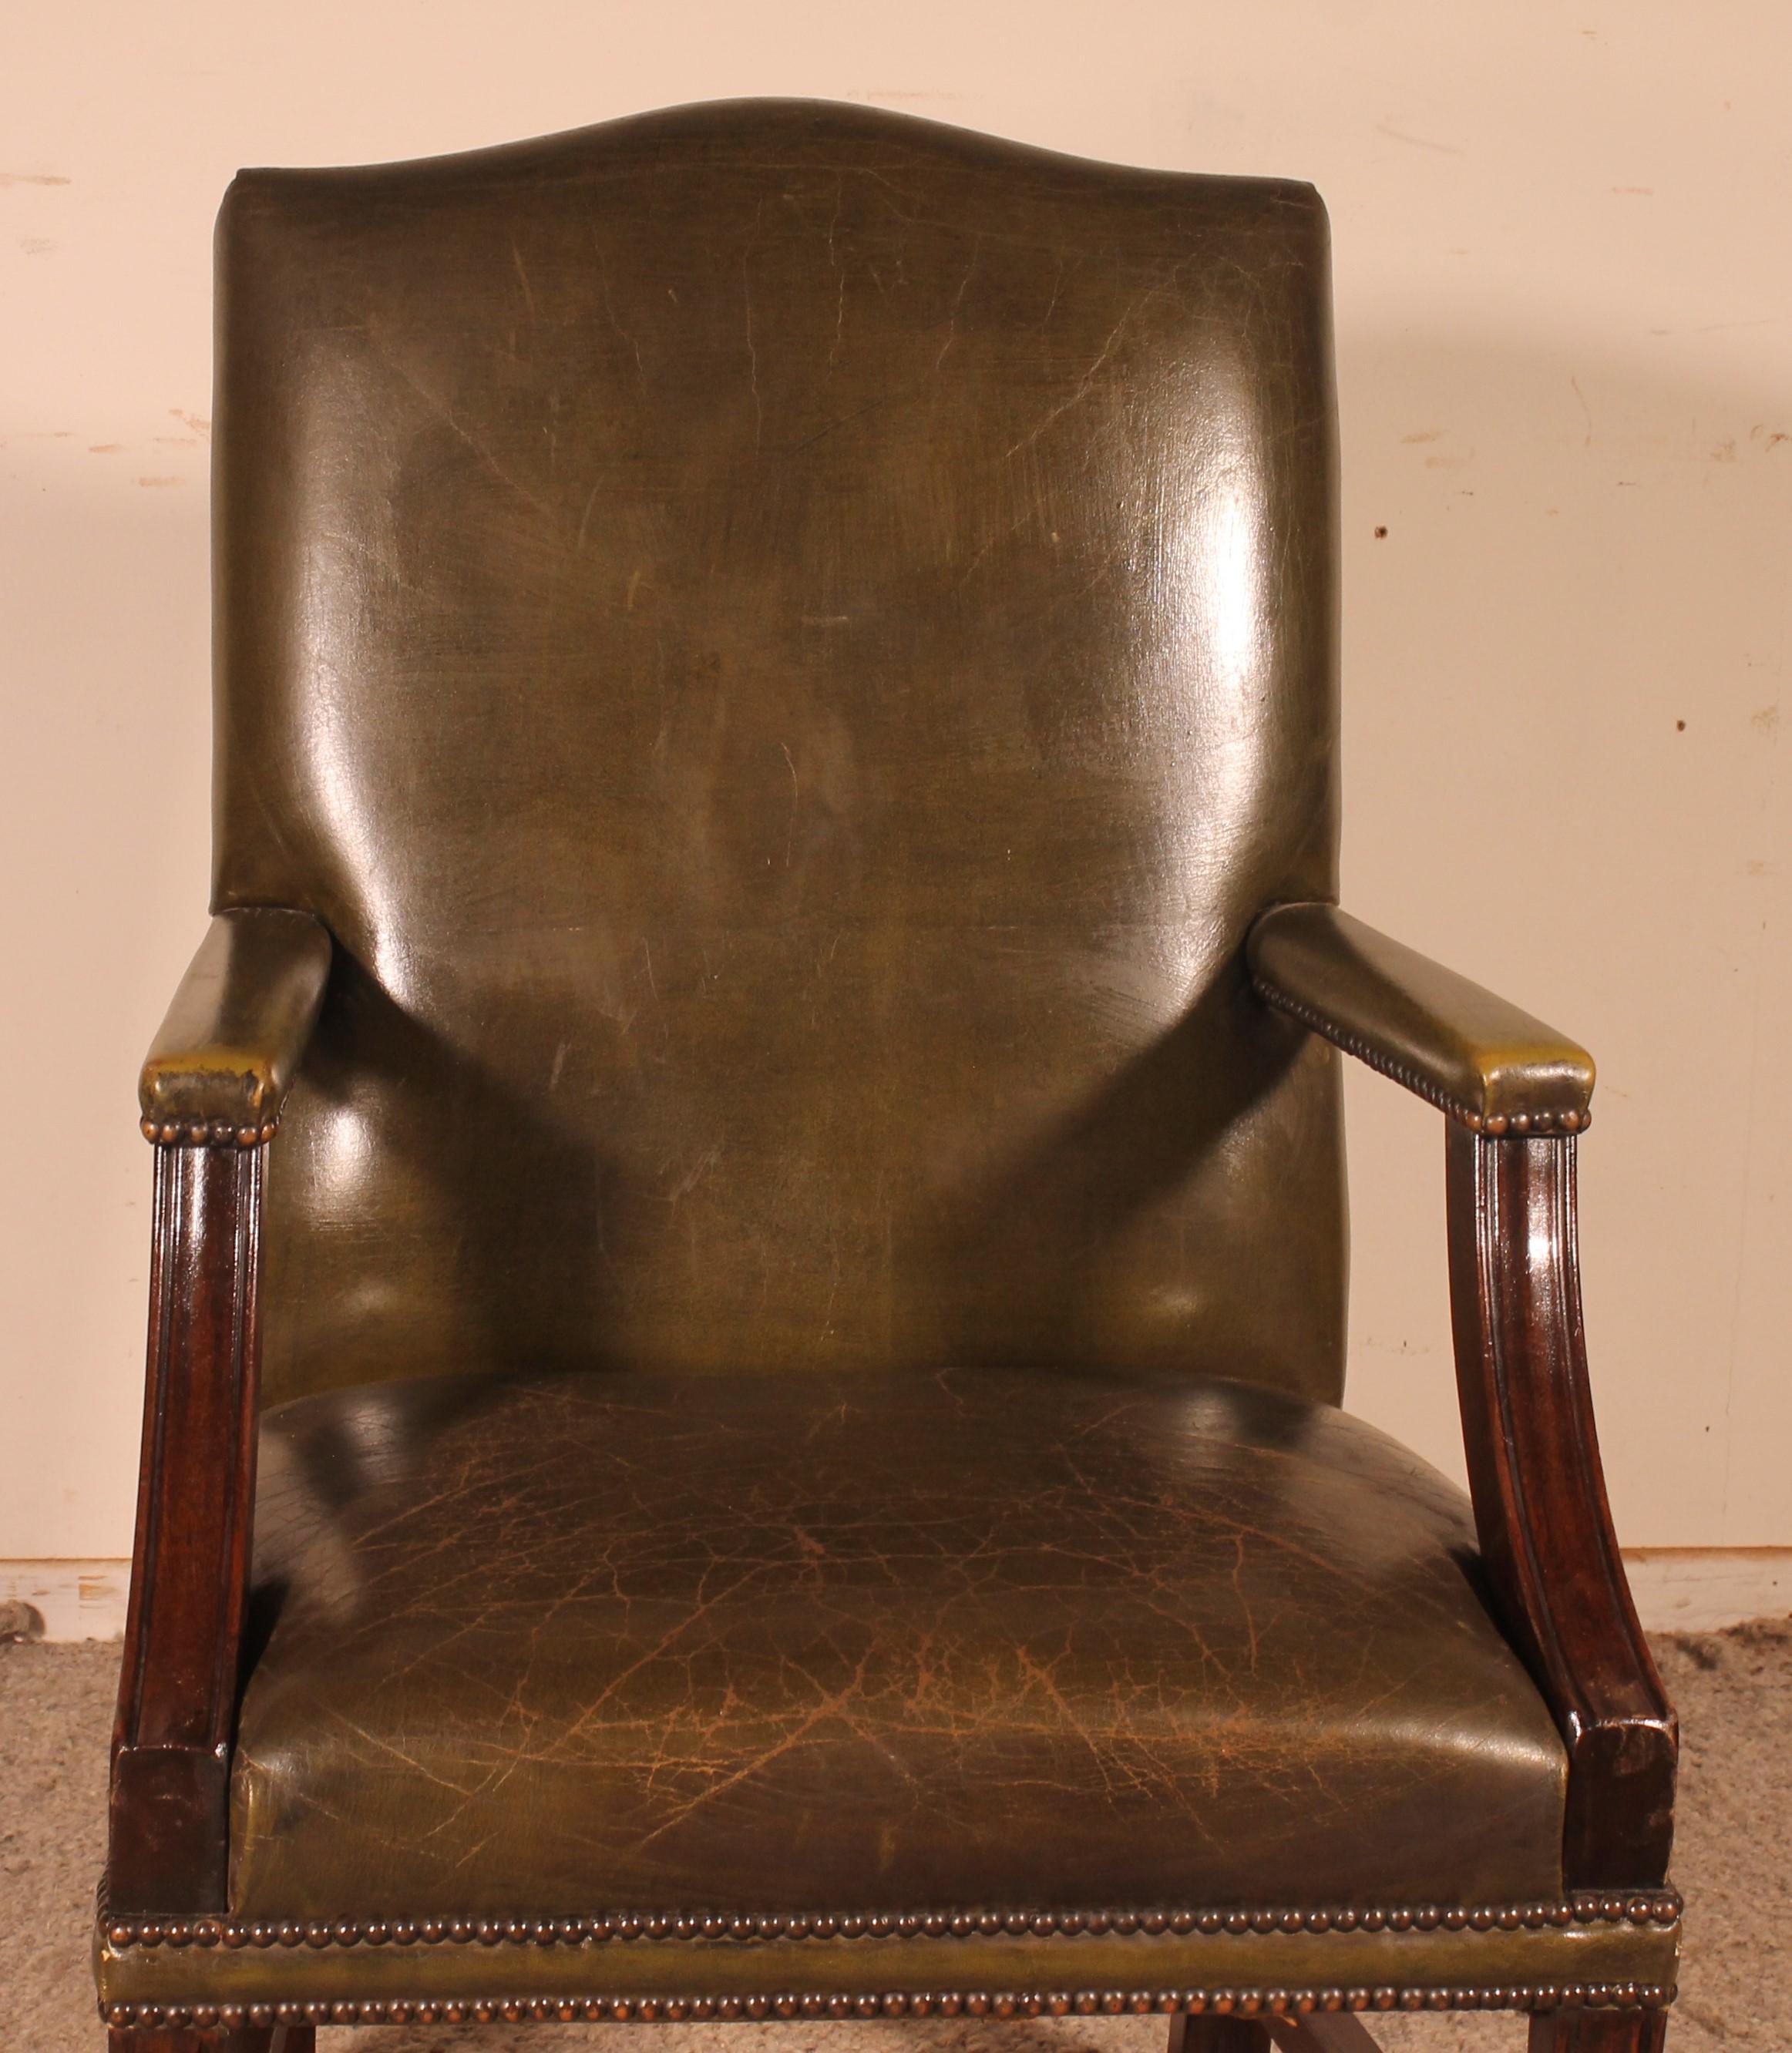 Sehr schöner englischer Ledersessel mit Mahagonifuß

Sehr schöner Sessel mit grünem Leder bezogen, das eine sehr schöne Patina hat
Der Sessel ruht auf einem massiven Mahagonifuß
Sehr bequem.
Kann als Loungesessel oder Schreibtischstuhl verwendet